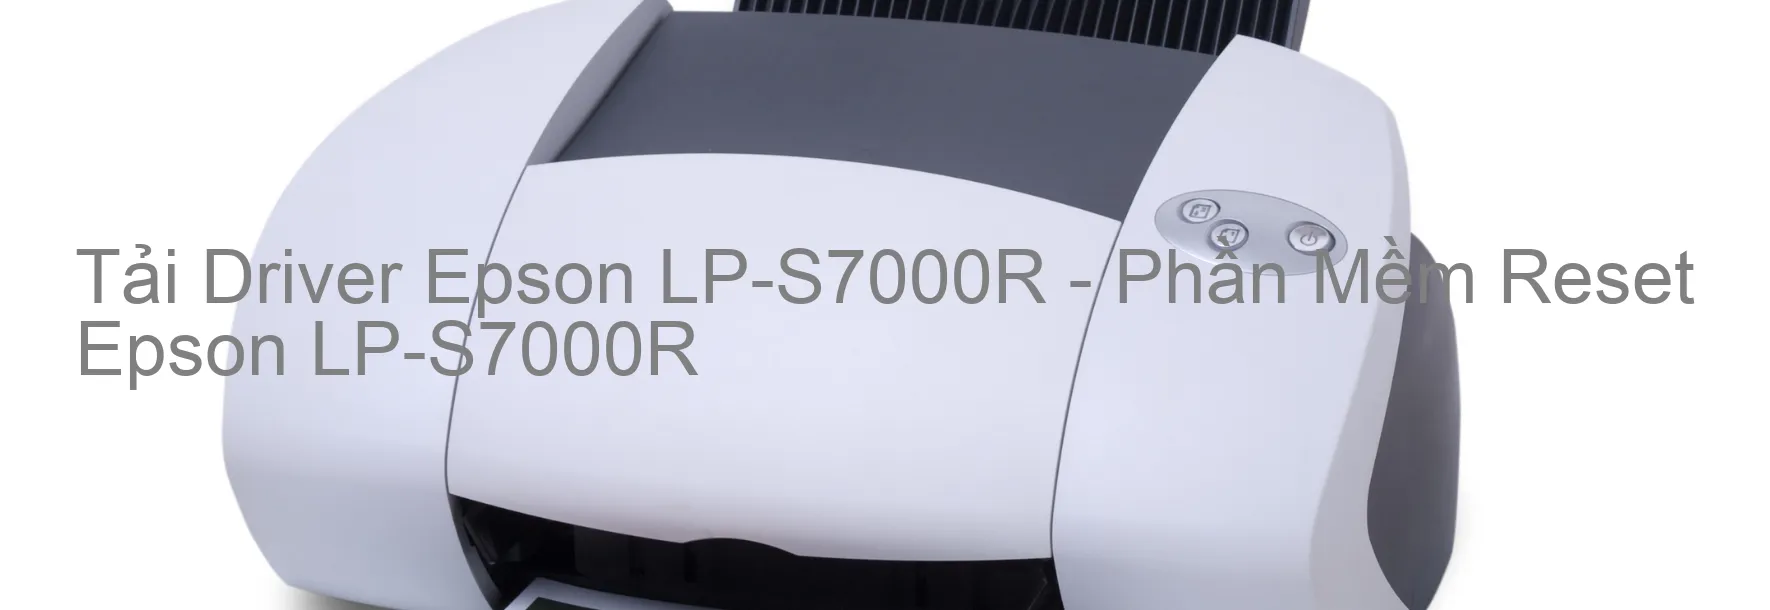 Driver Epson LP-S7000R, Phần Mềm Reset Epson LP-S7000R